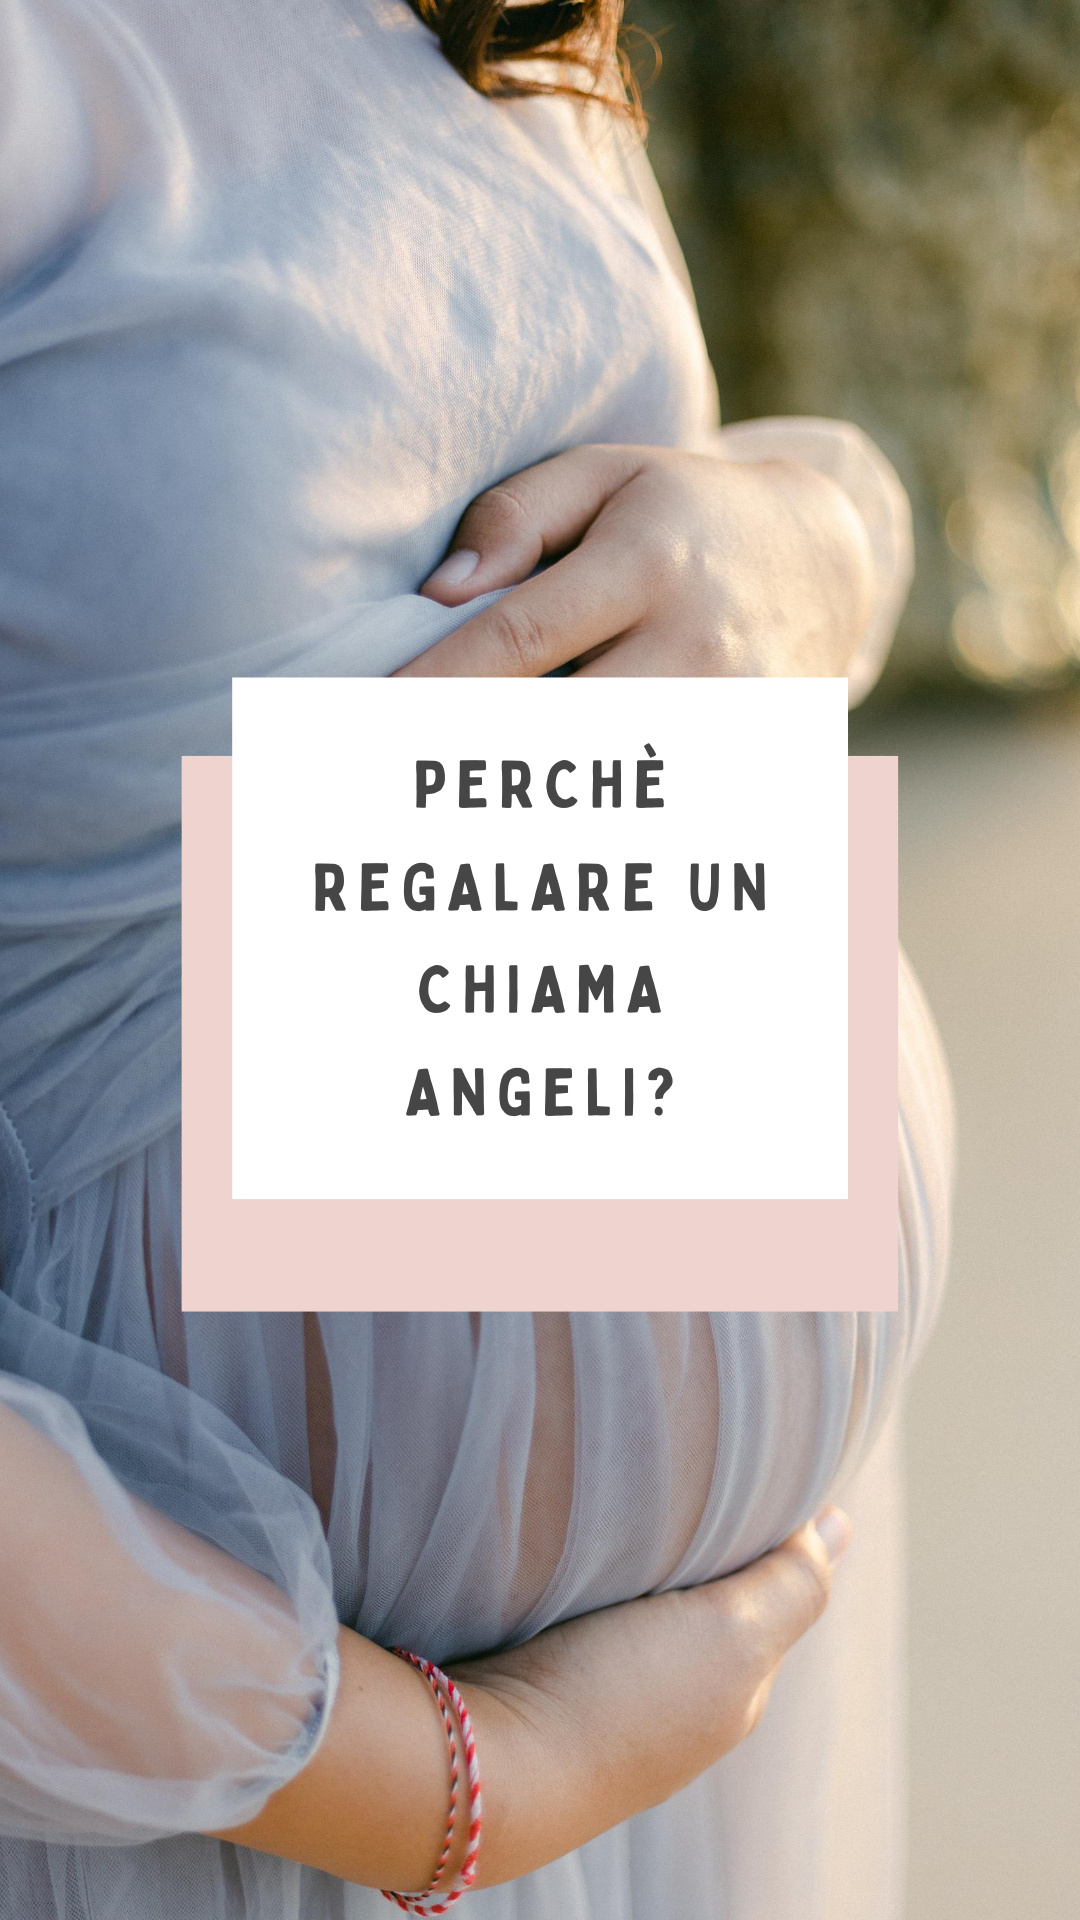 Ciondolo Chiama Angeli: cos’è e perchè si regala?